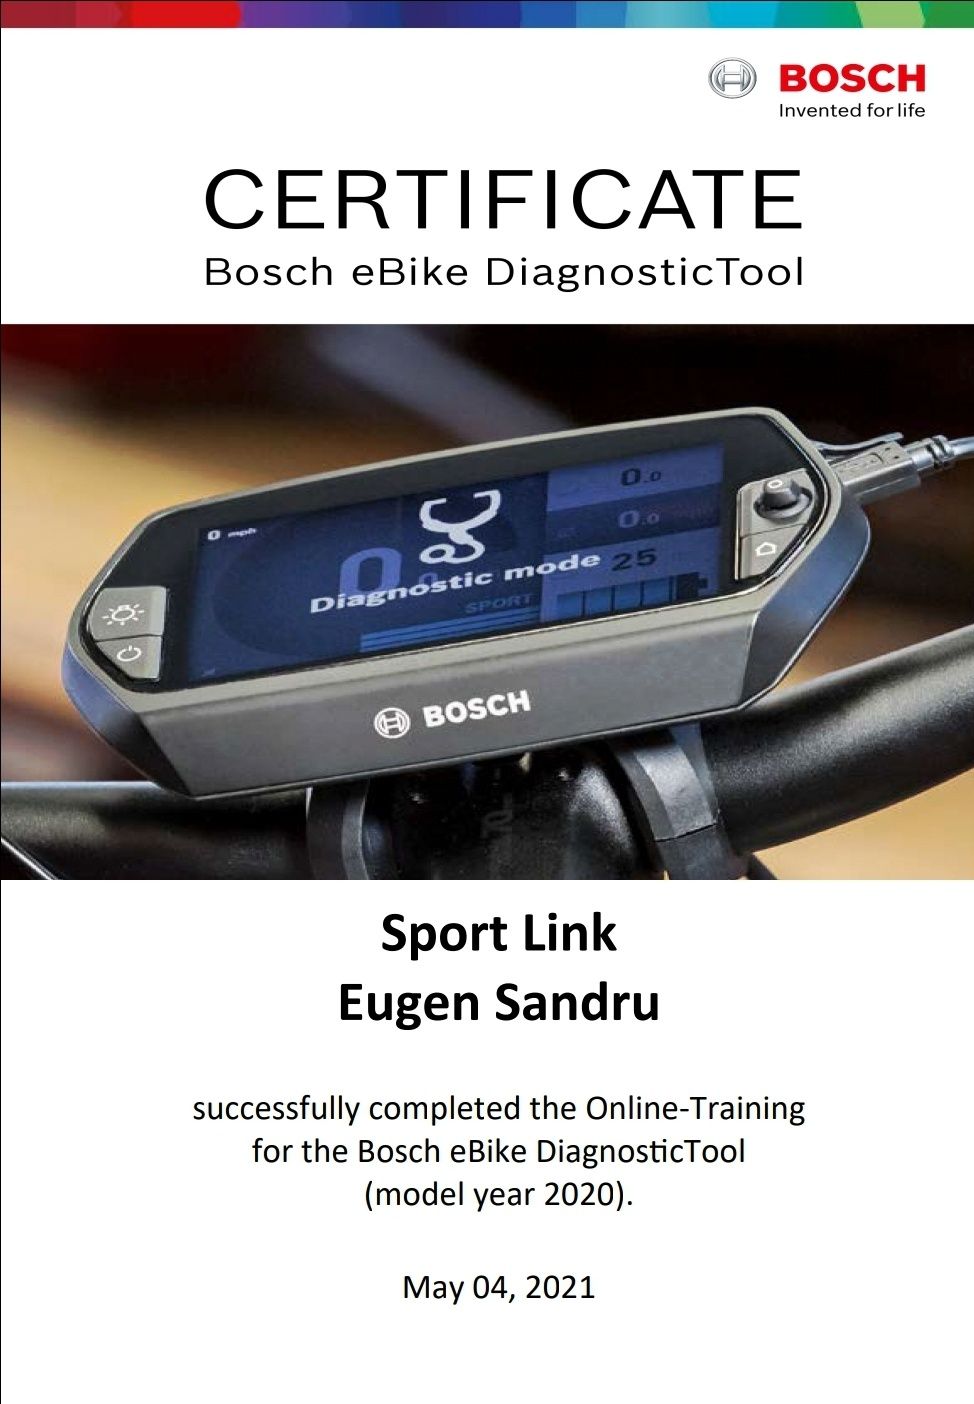 Diagnoza și update bicicleta electrica motor Bosch sau OLI